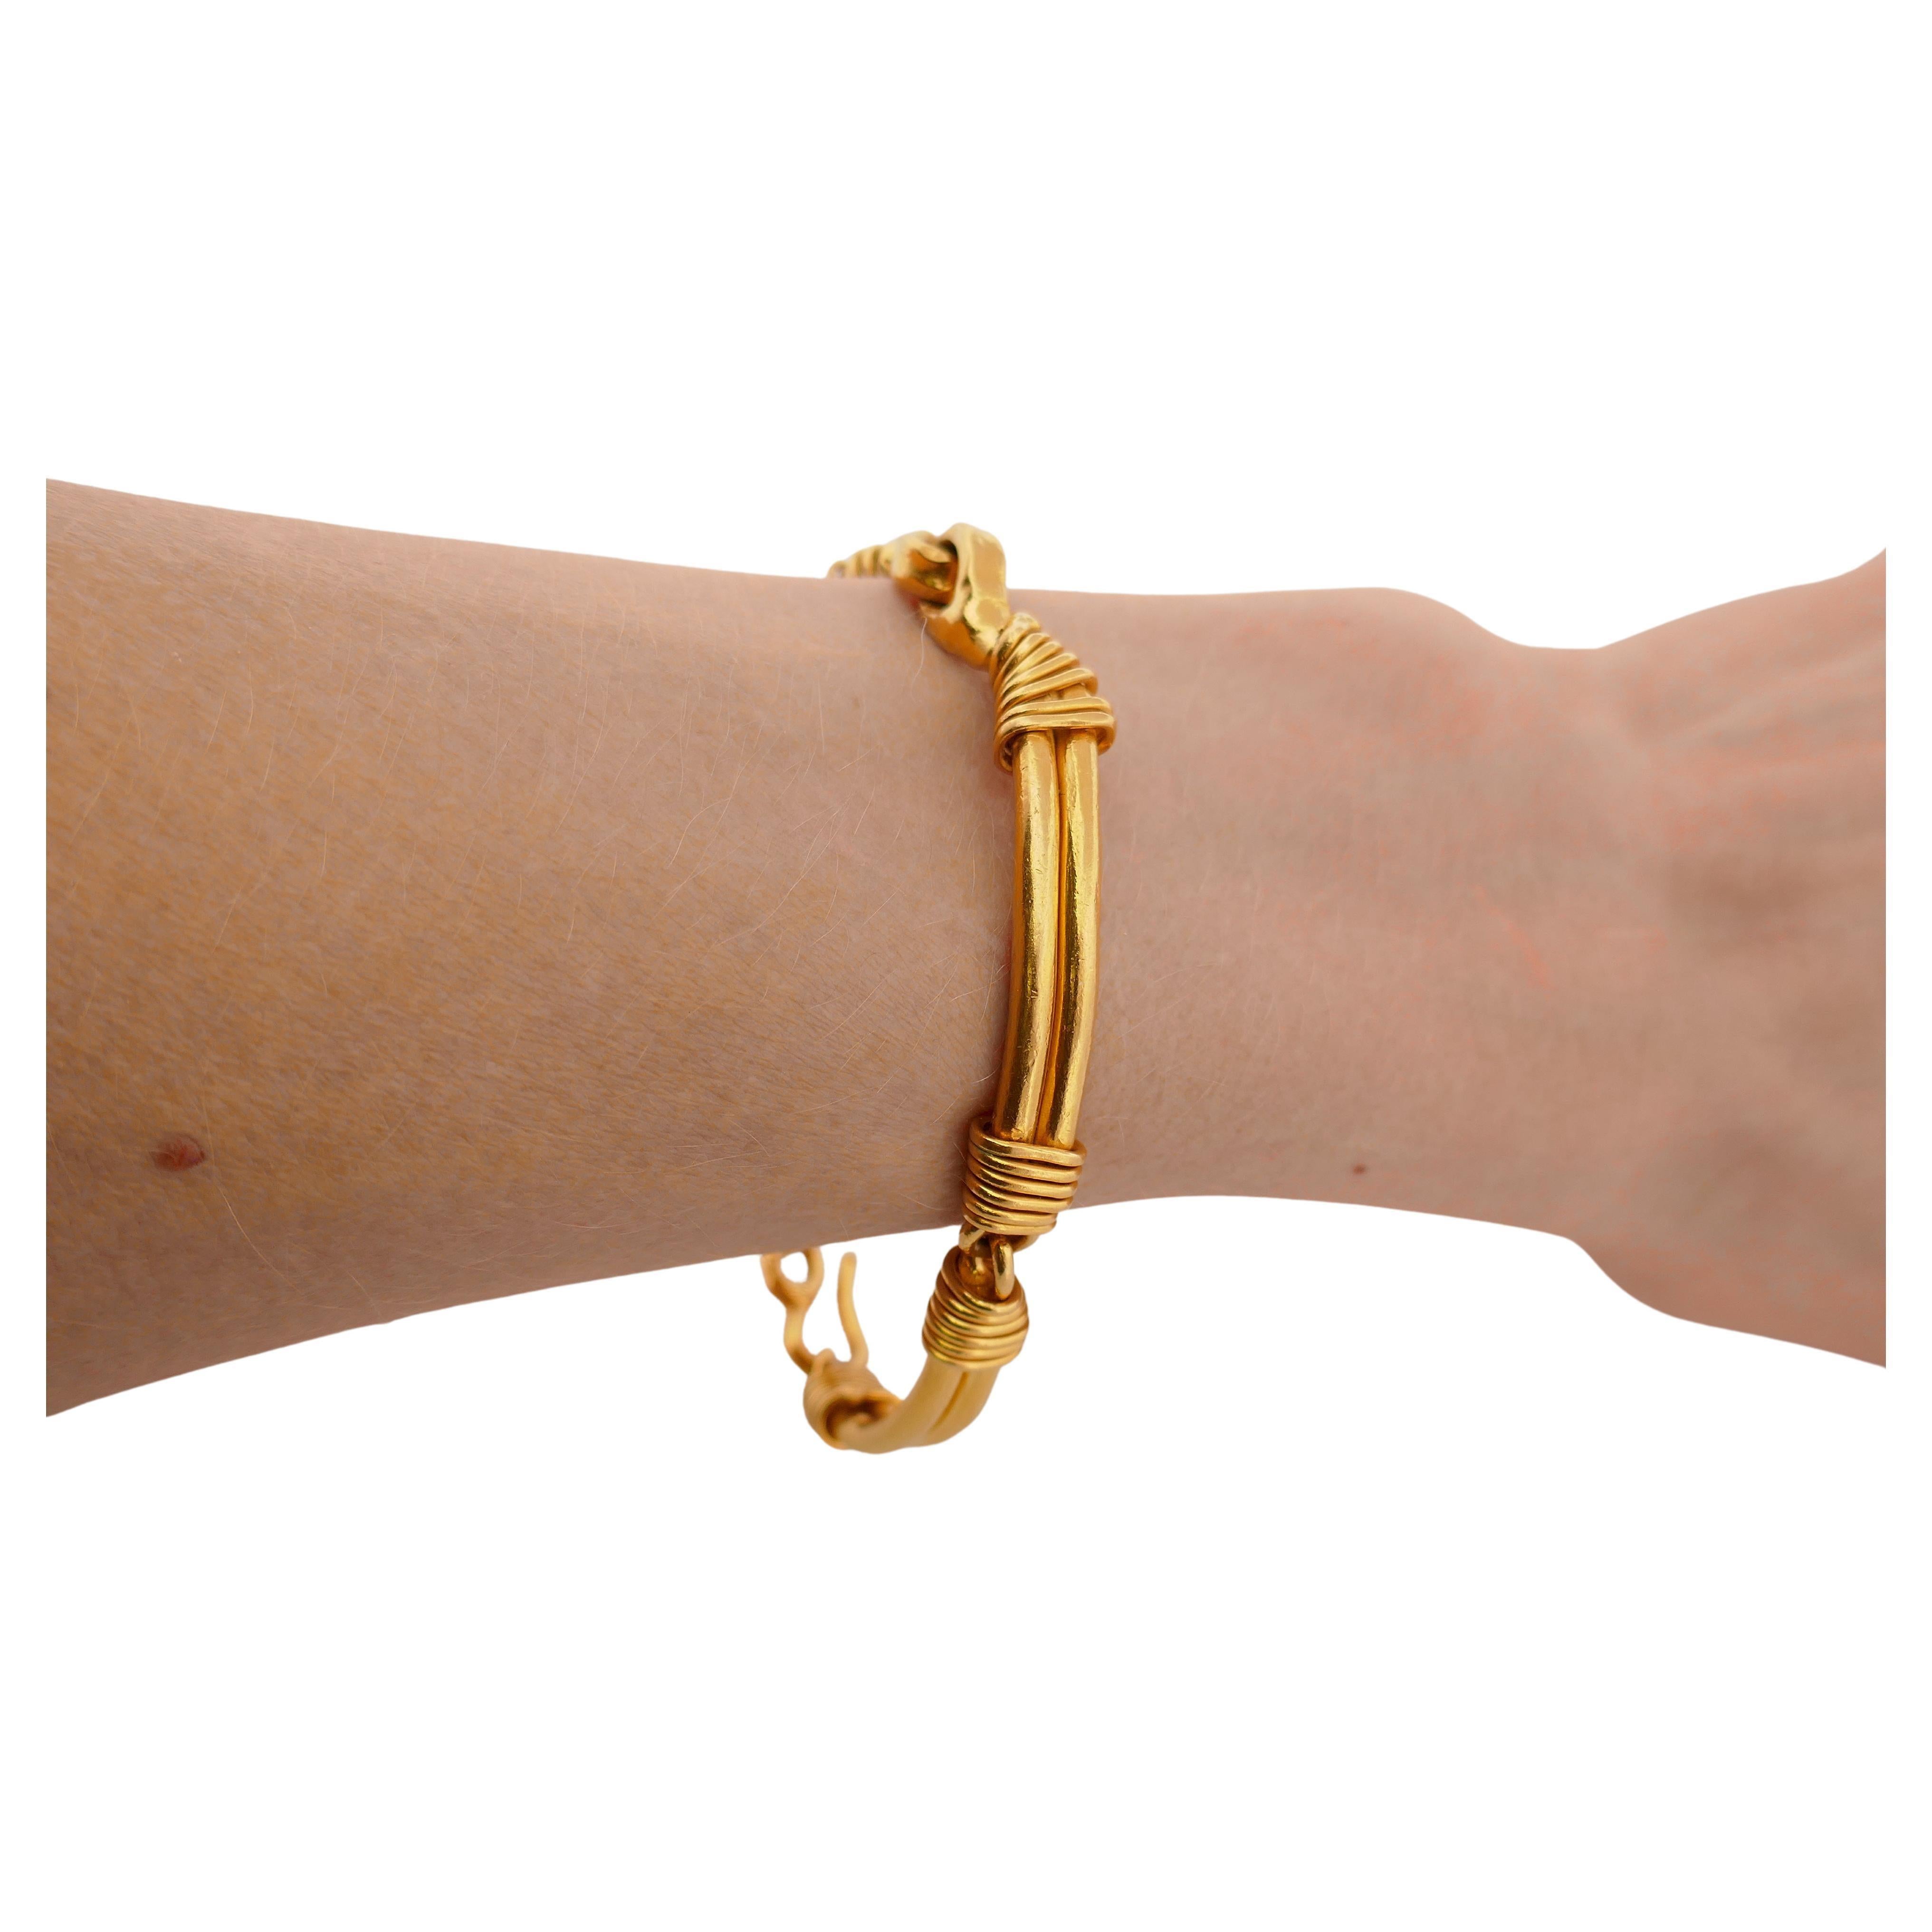 Ein exquisites 22-karätiges Goldarmband von Jean Mahie.
Das Armband ist als Stabgliederarmband mit Schlaufenverbindungen gestaltet. Die Barren sind von unregelmäßiger Größe, die eine Freiheit und spontane Natur der Kunst vermittelt. Die Golddrähte,